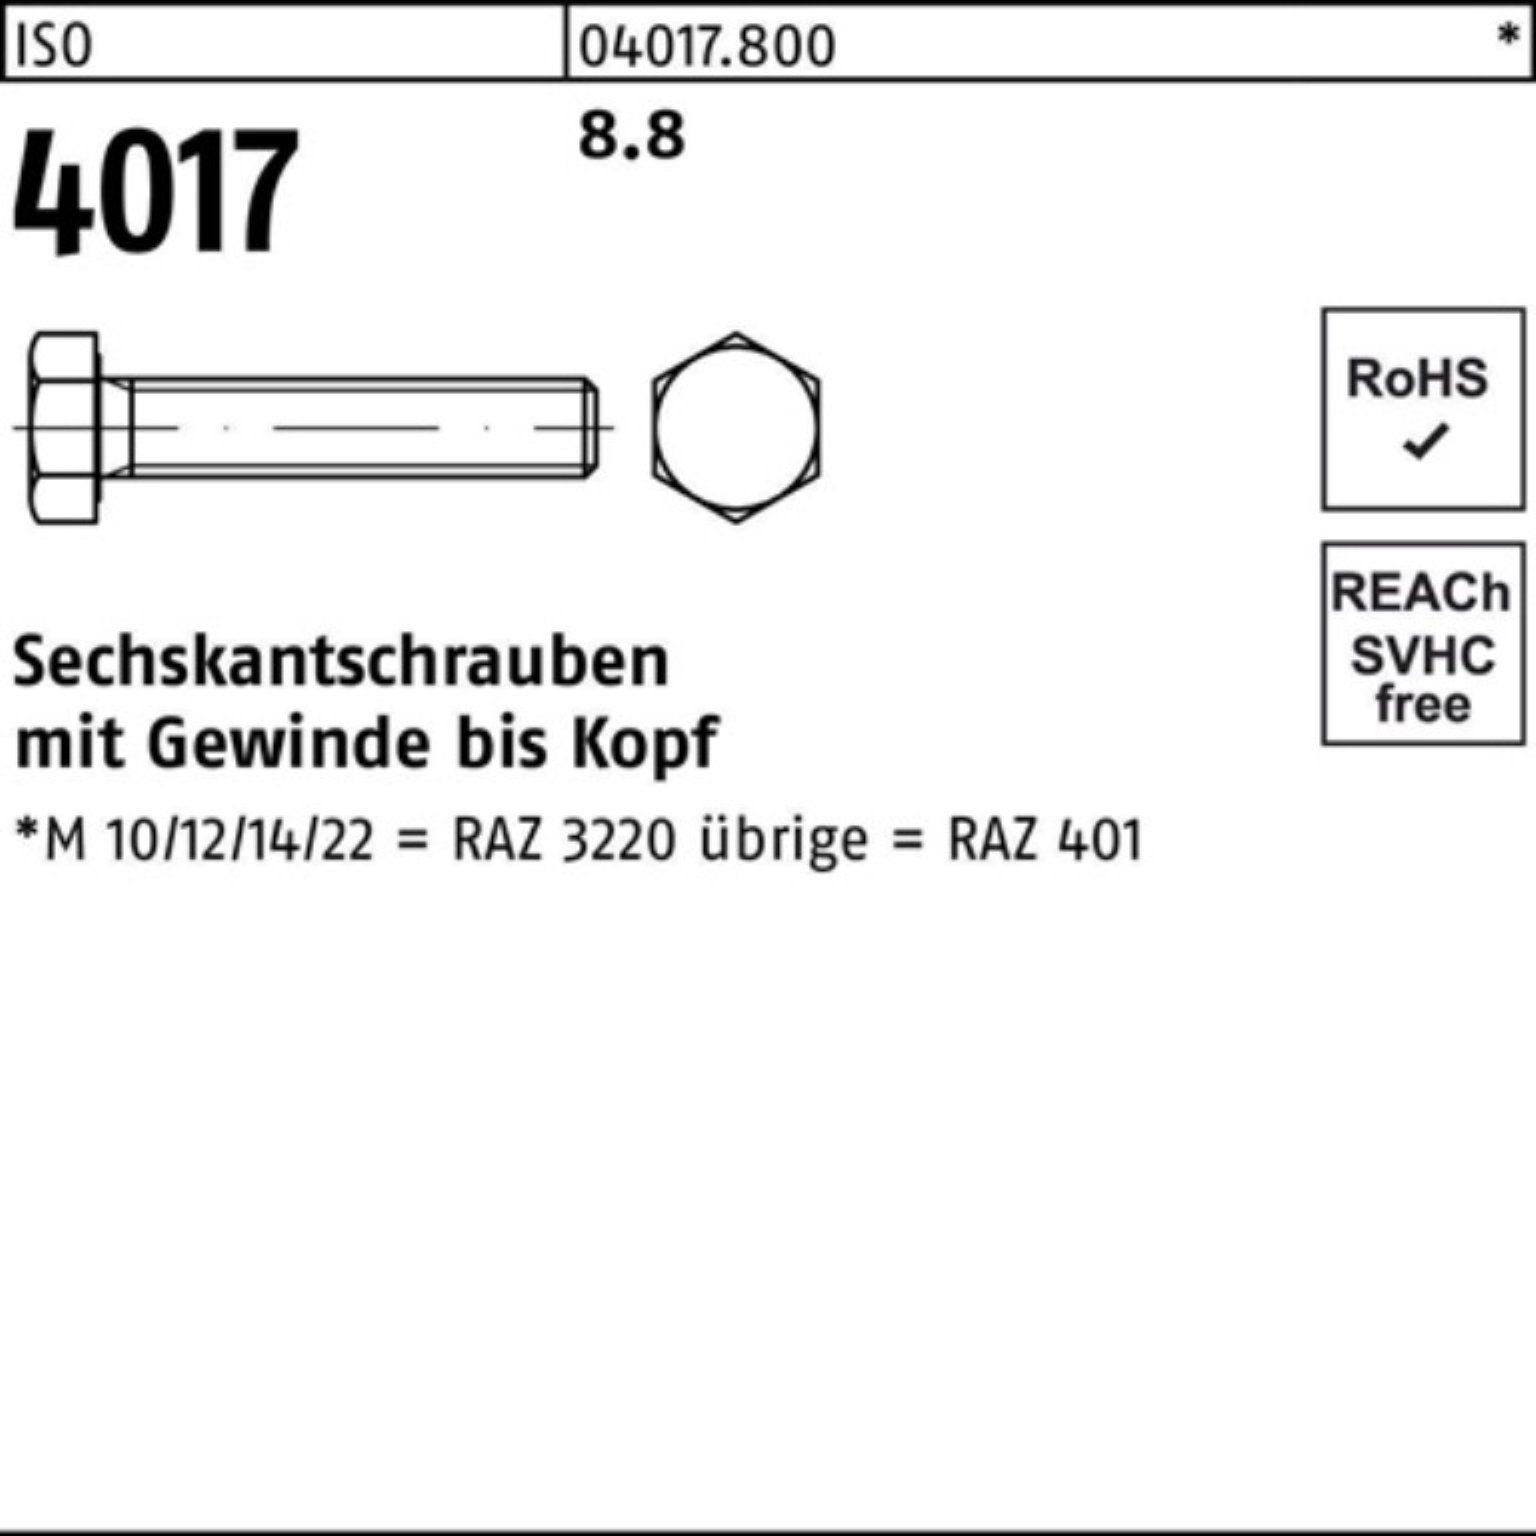 Stück 50 Sechskantschraube M16x 100er ISO 8.8 Sechskantschraube Pack ISO VG 50 Bufab 4017 401